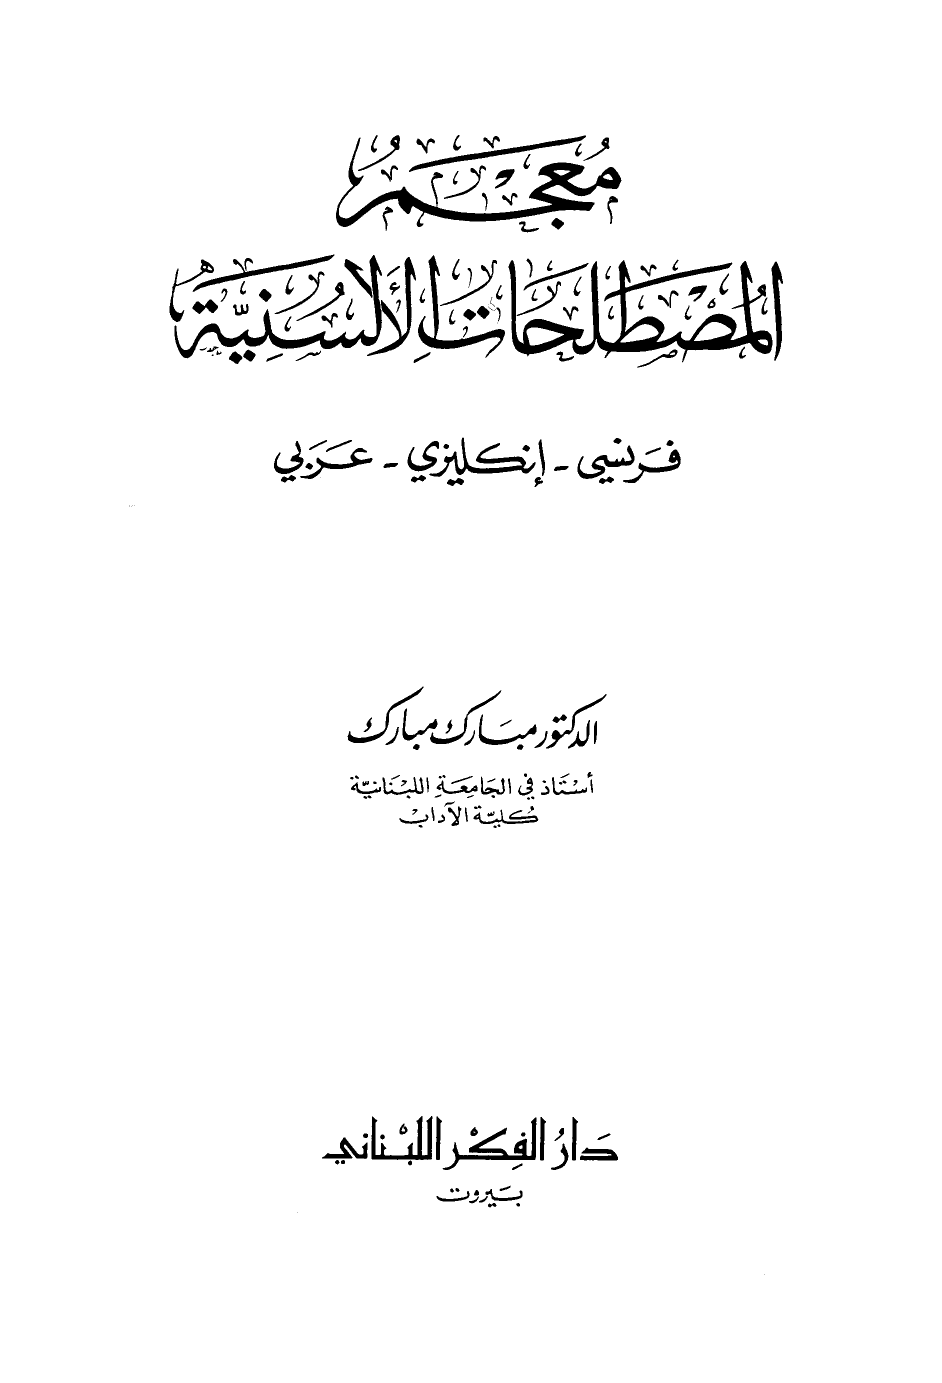 تنزيل وتحميل كتاِب معجم المصطلحات الألسنية فرنسي إنجليزي عربي pdf برابط مباشر مجاناً